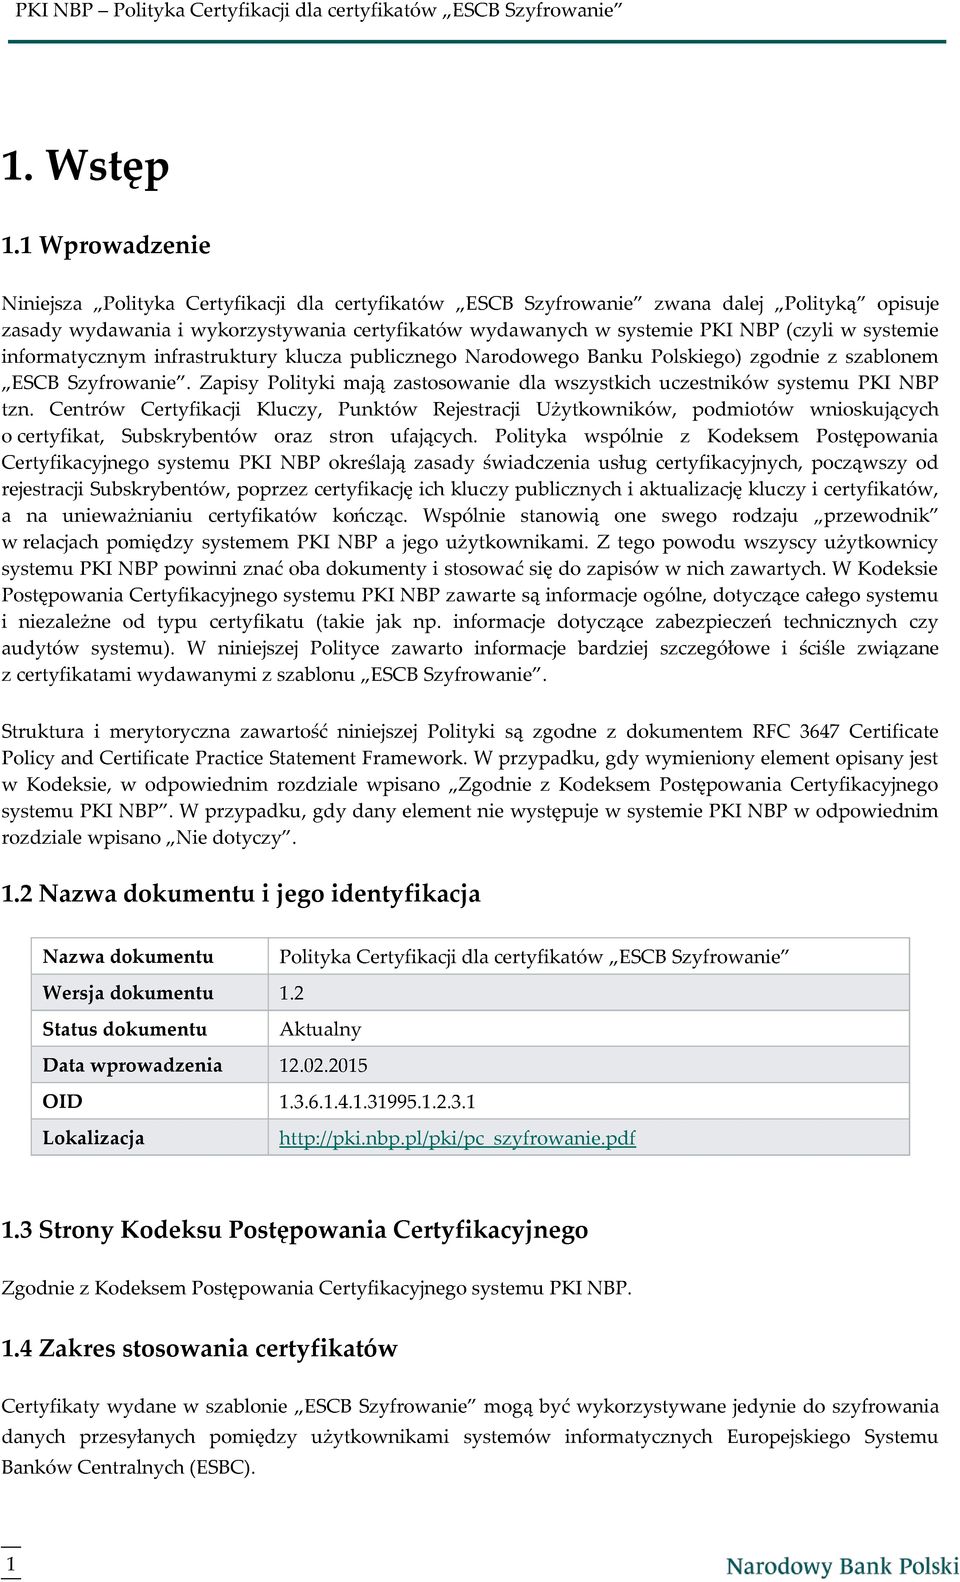 systemie informatycznym infrastruktury klucza publicznego Narodowego Banku Polskiego) zgodnie z szablonem ESCB Szyfrowanie.